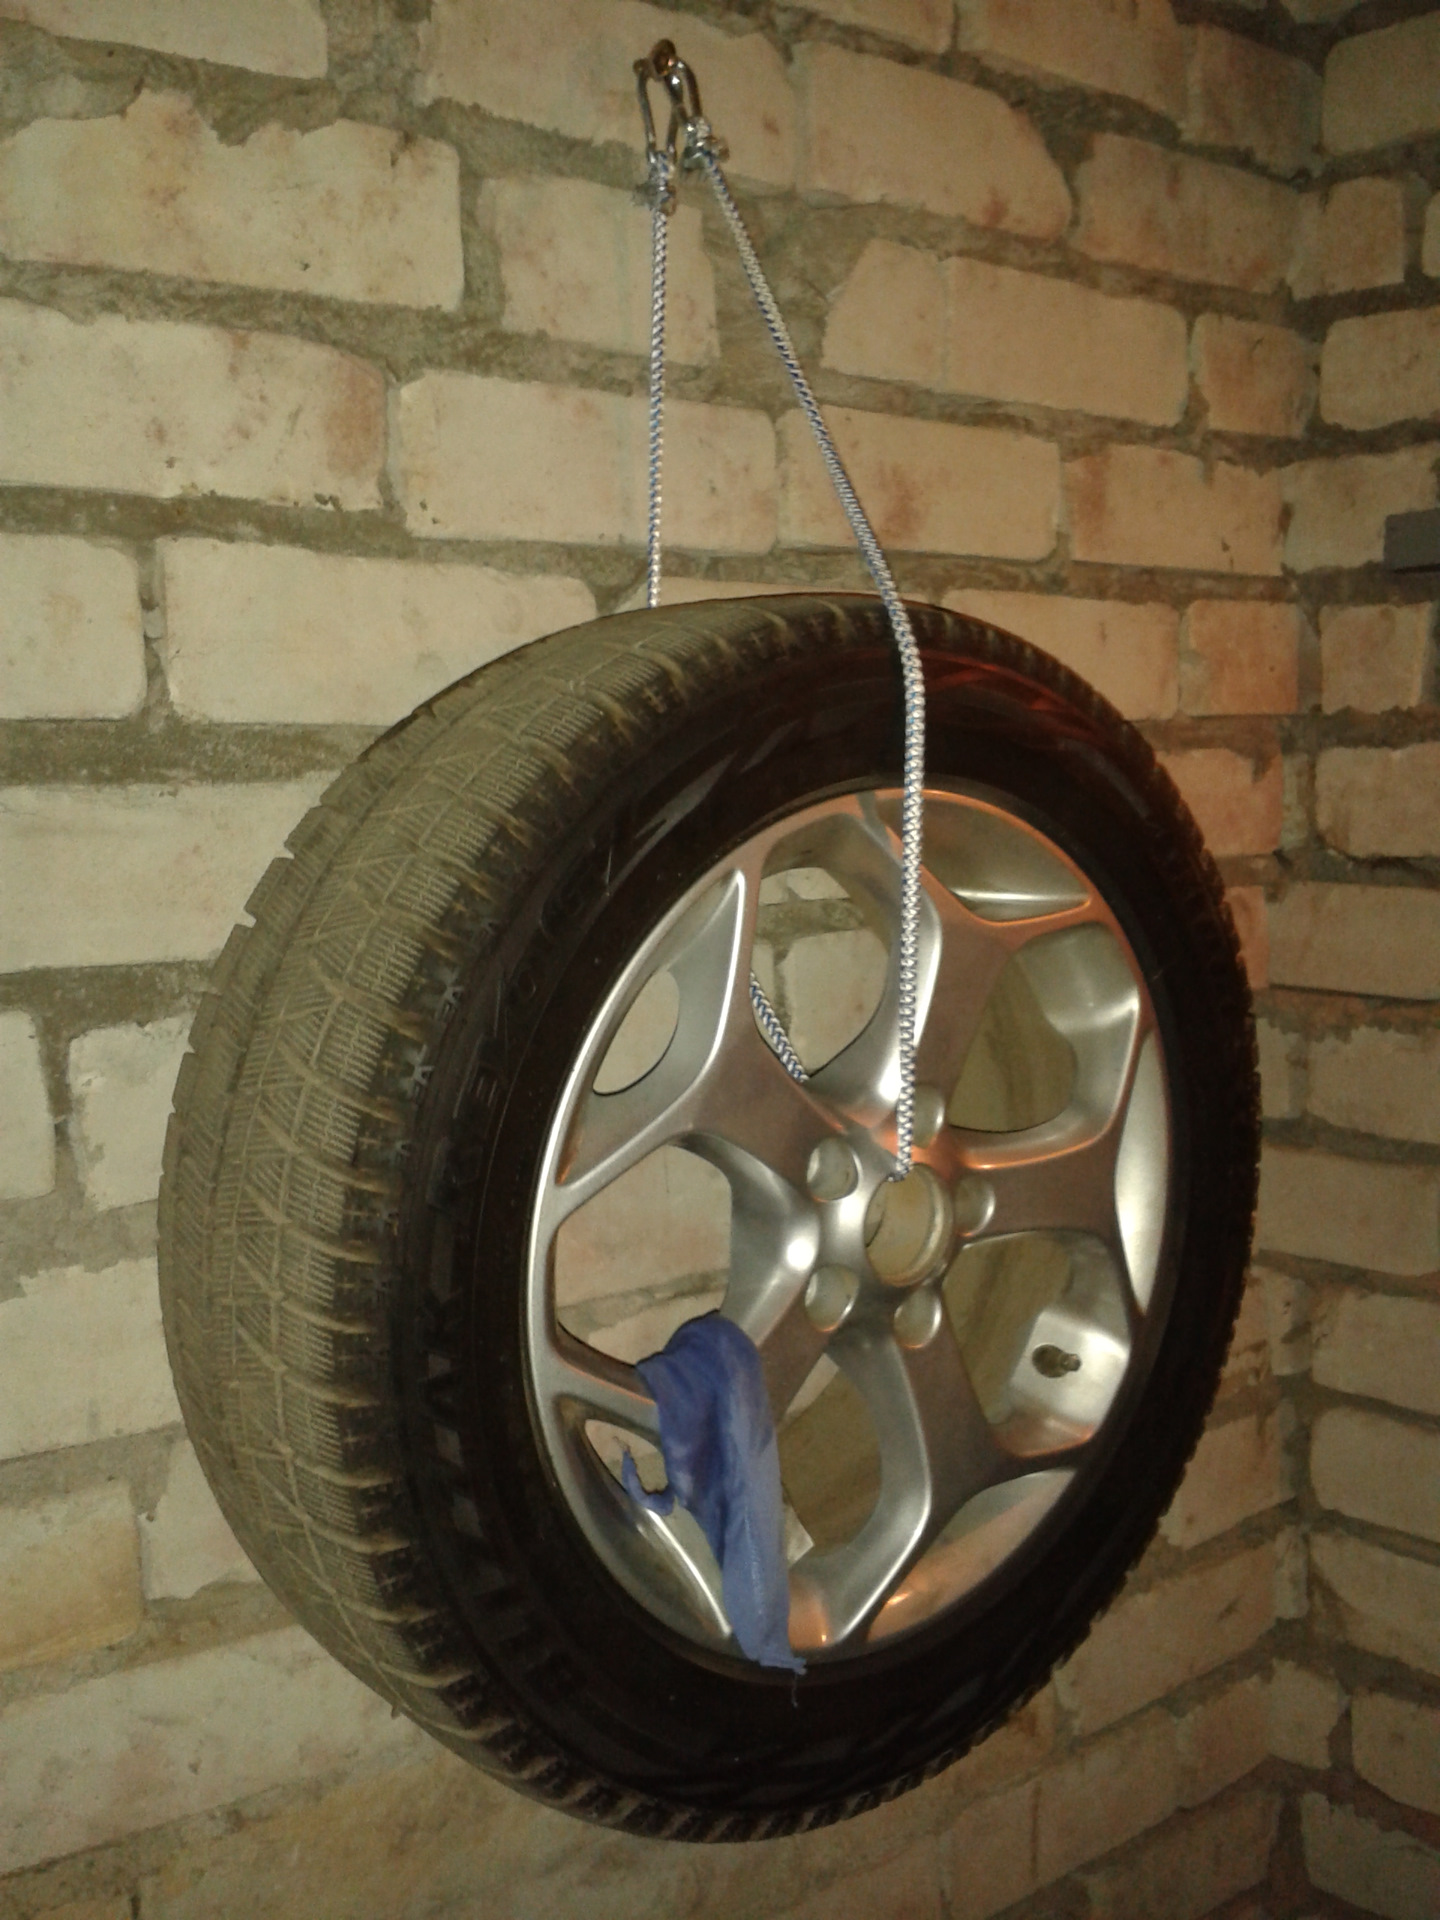 Кронштейн для колес на стену. Подвес для колес на стену. Кронштейн для подвешивания колес в гараже. Подвесы для колес в гараже. Держатель для автомобильных колес.